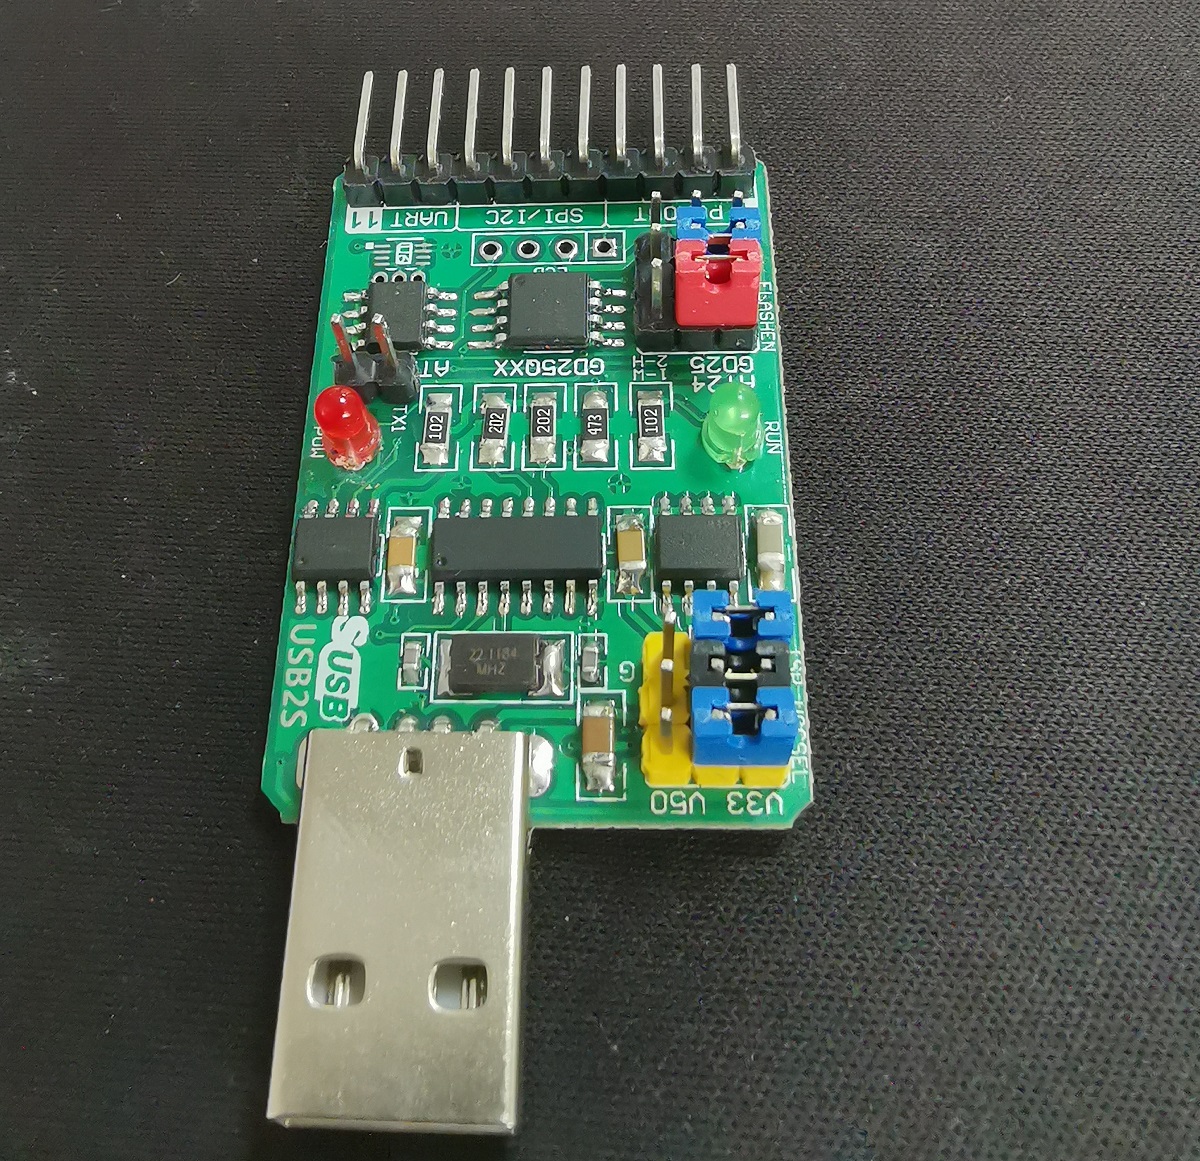 可编程 USB 转串口适配器开发板的详细接口与功能